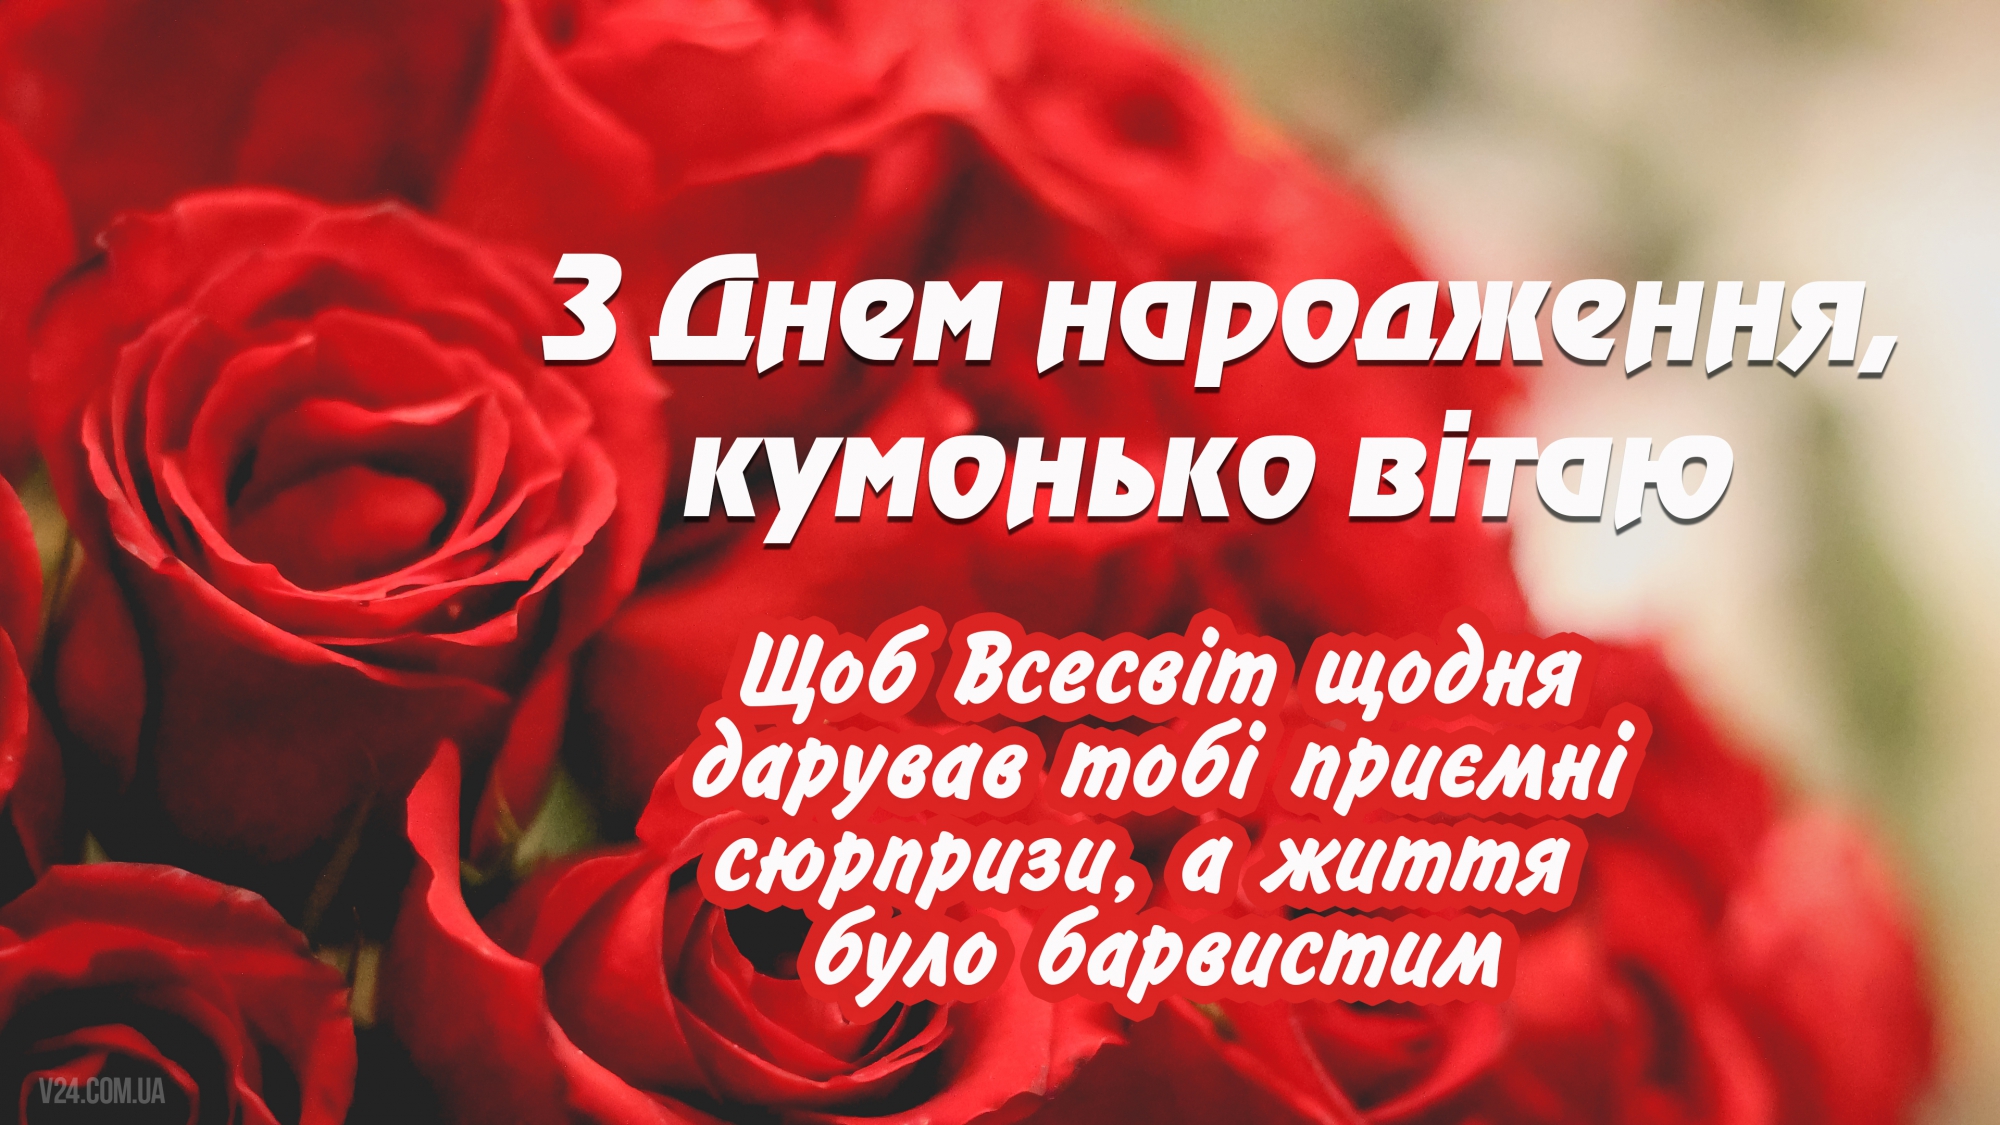 Вітання кумі - Поздравления на все праздники на русском языке